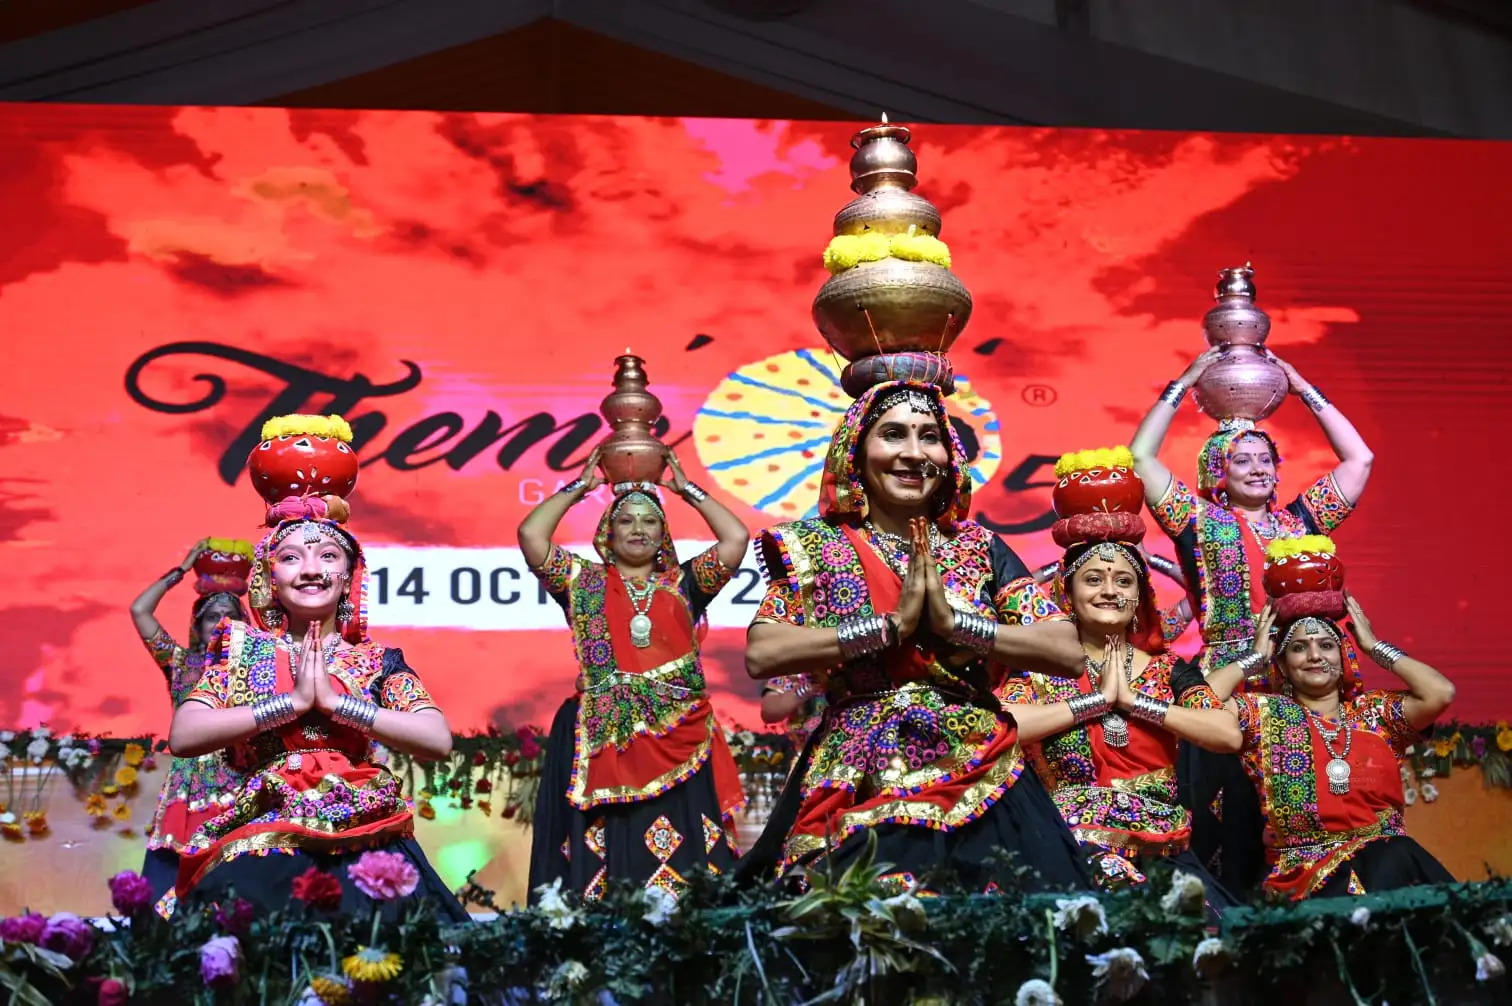 Ayodhya News: गोवा के कुणबी नृत्य व बन गईले मंदिर श्री राम के लोक स्वरो से गुंजा तुलसी उद्यान मंच